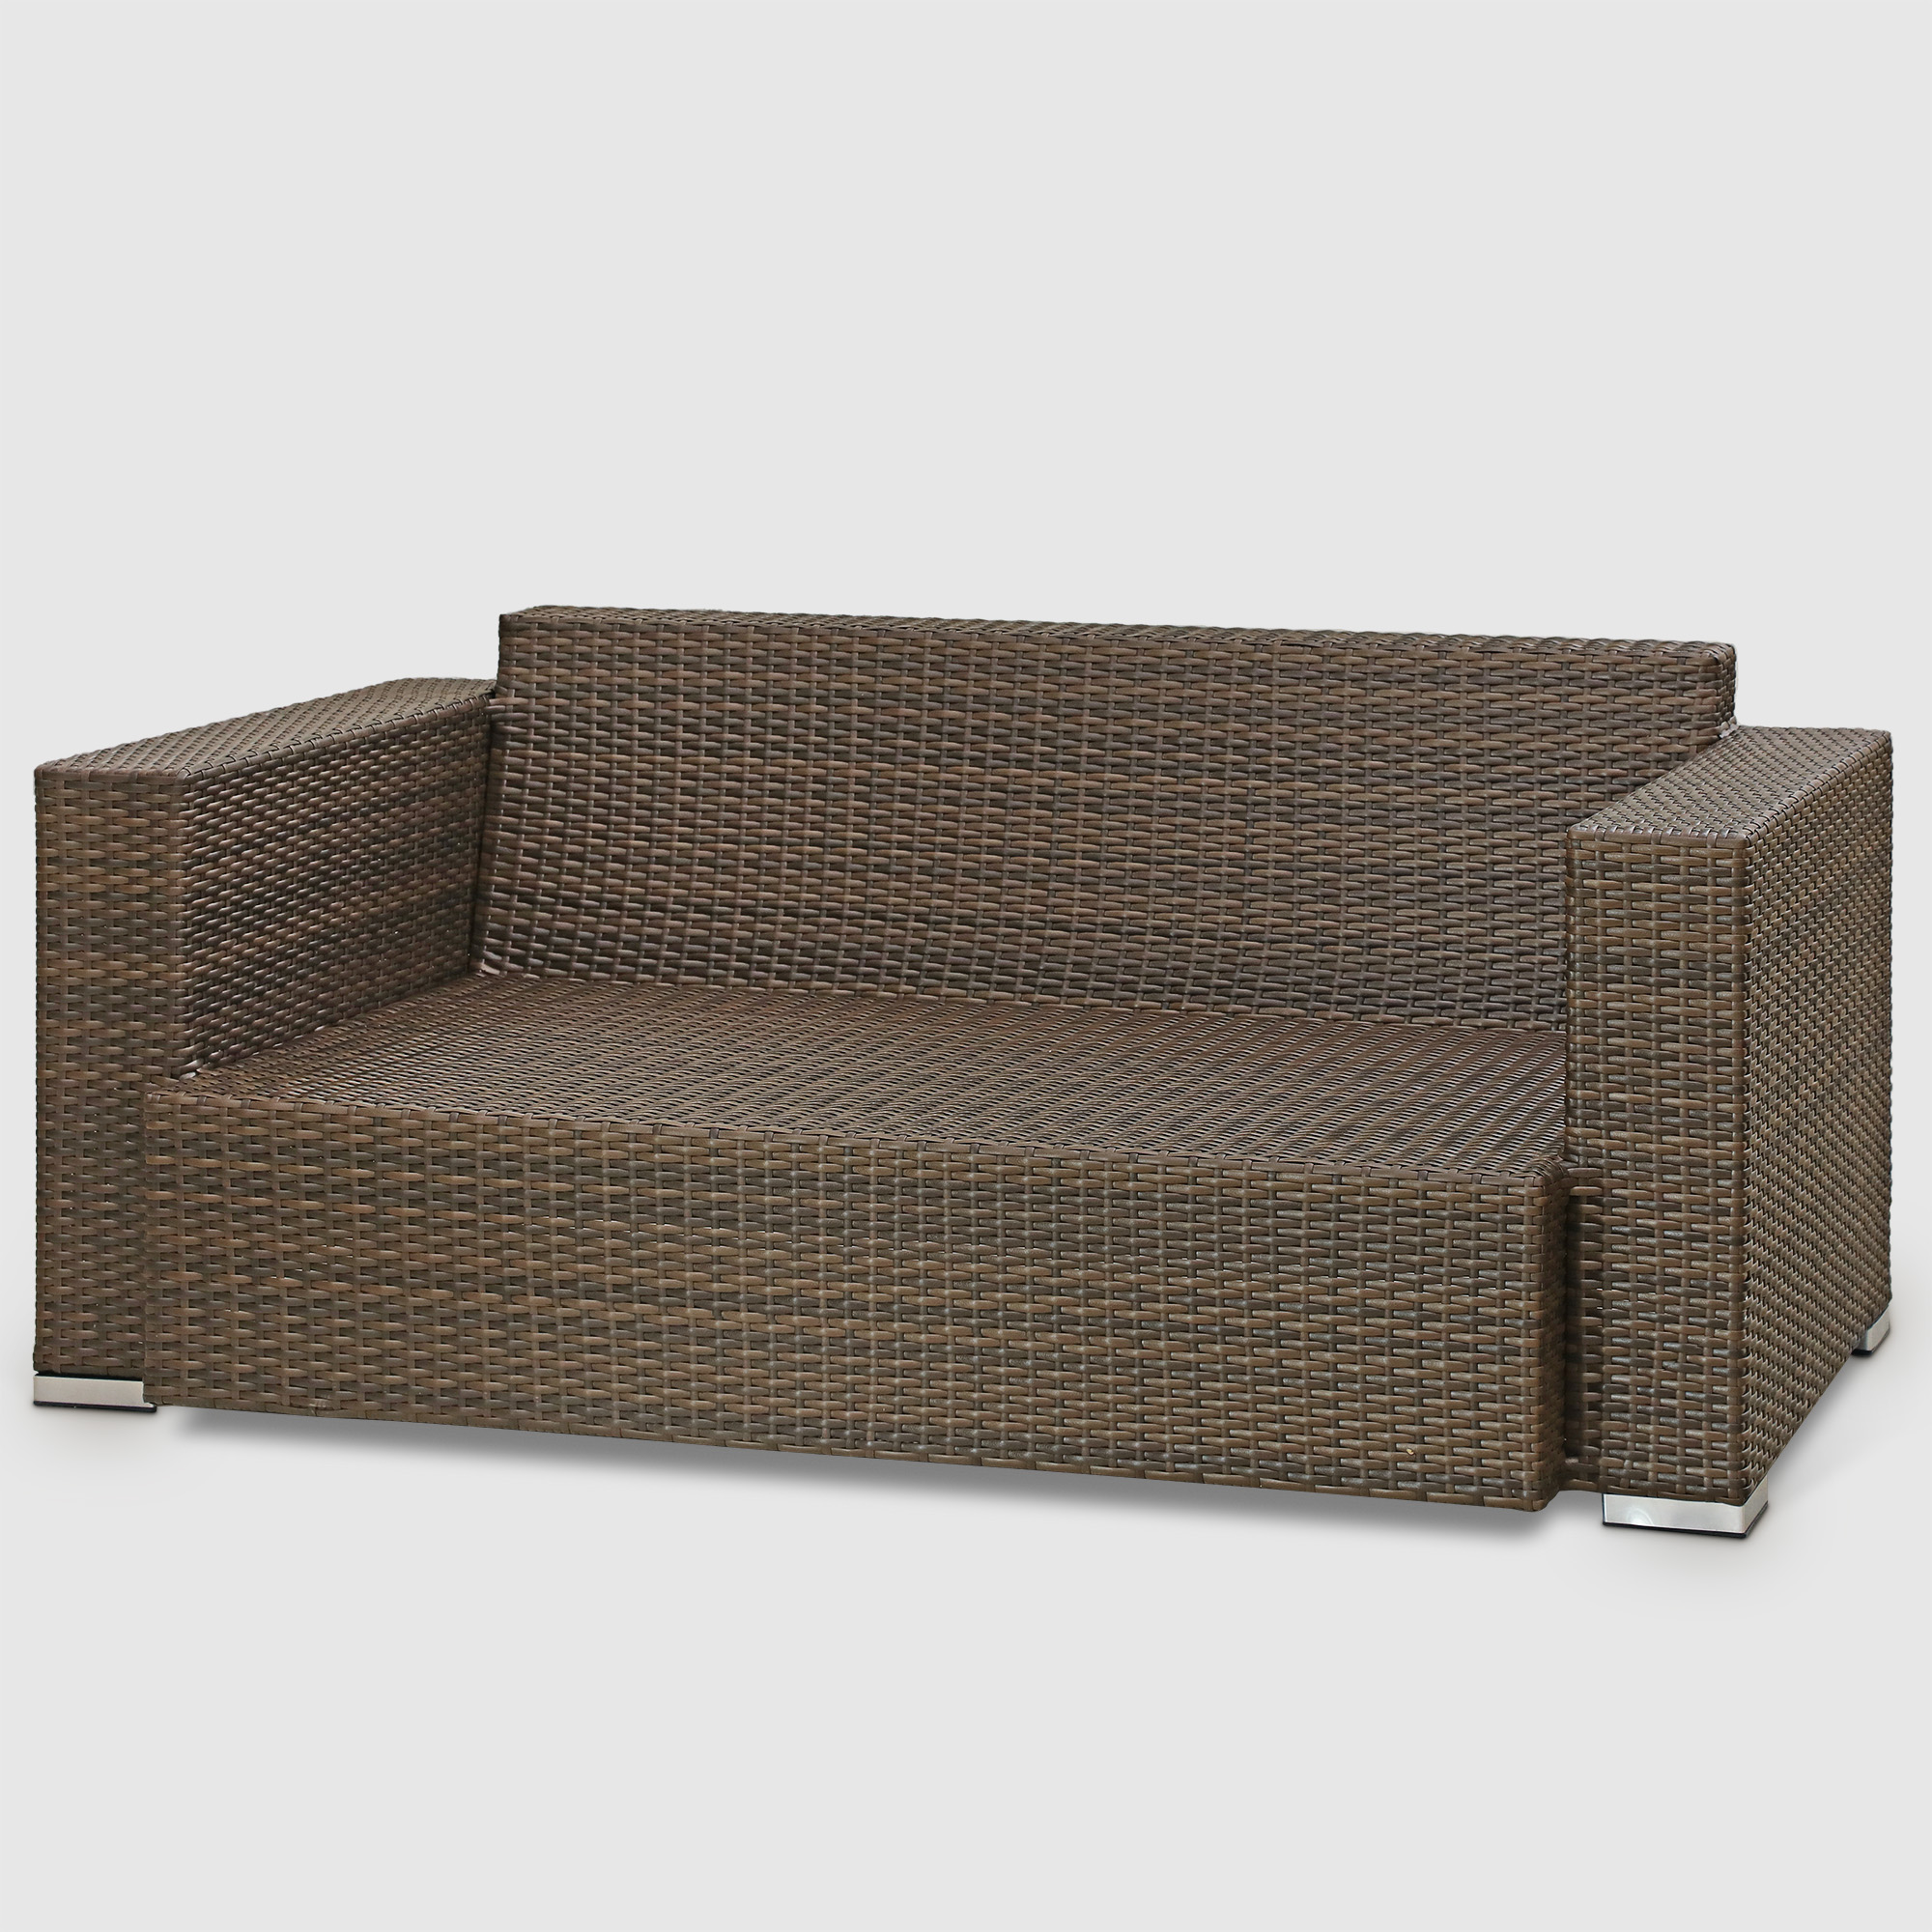 Комплект мебели Ns Rattan Cleo коричнево-бежевый 7 предметов, цвет коричневый, размер 199х68х72 - фото 8